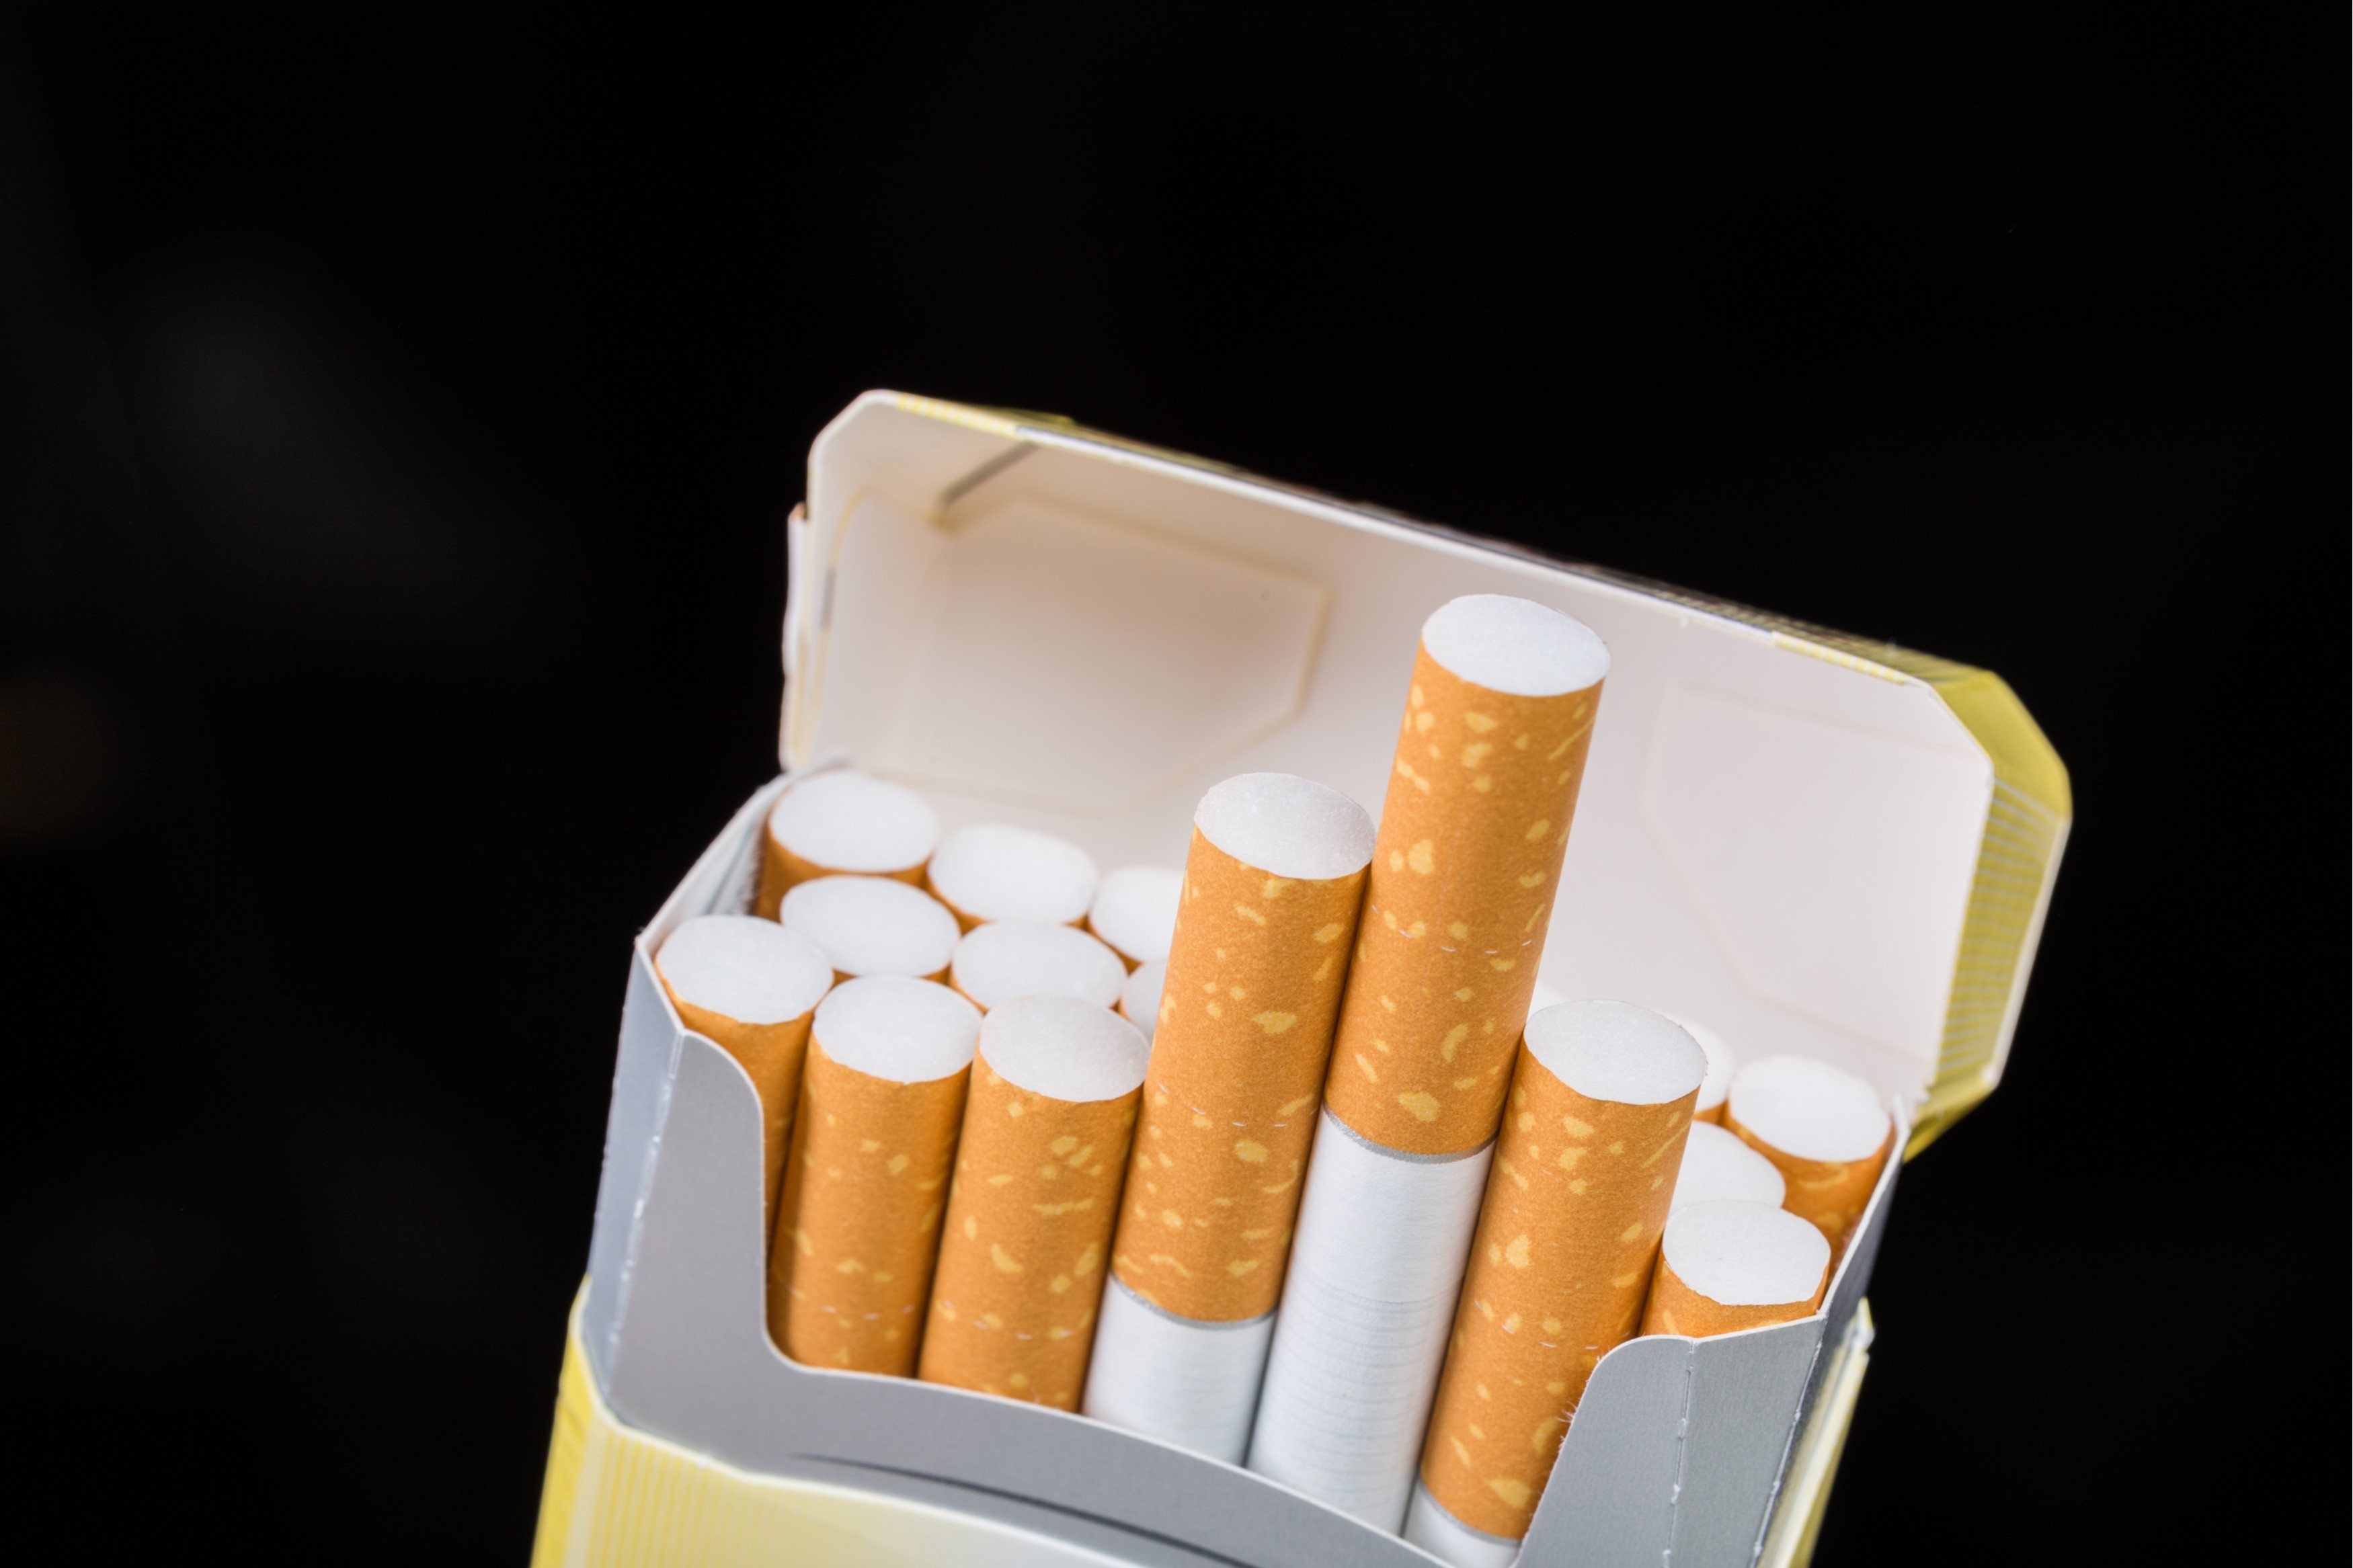 PROPUNERE DE REZOLUȚIE referitoare la Acordul privind tutunul (Acordul PMI)